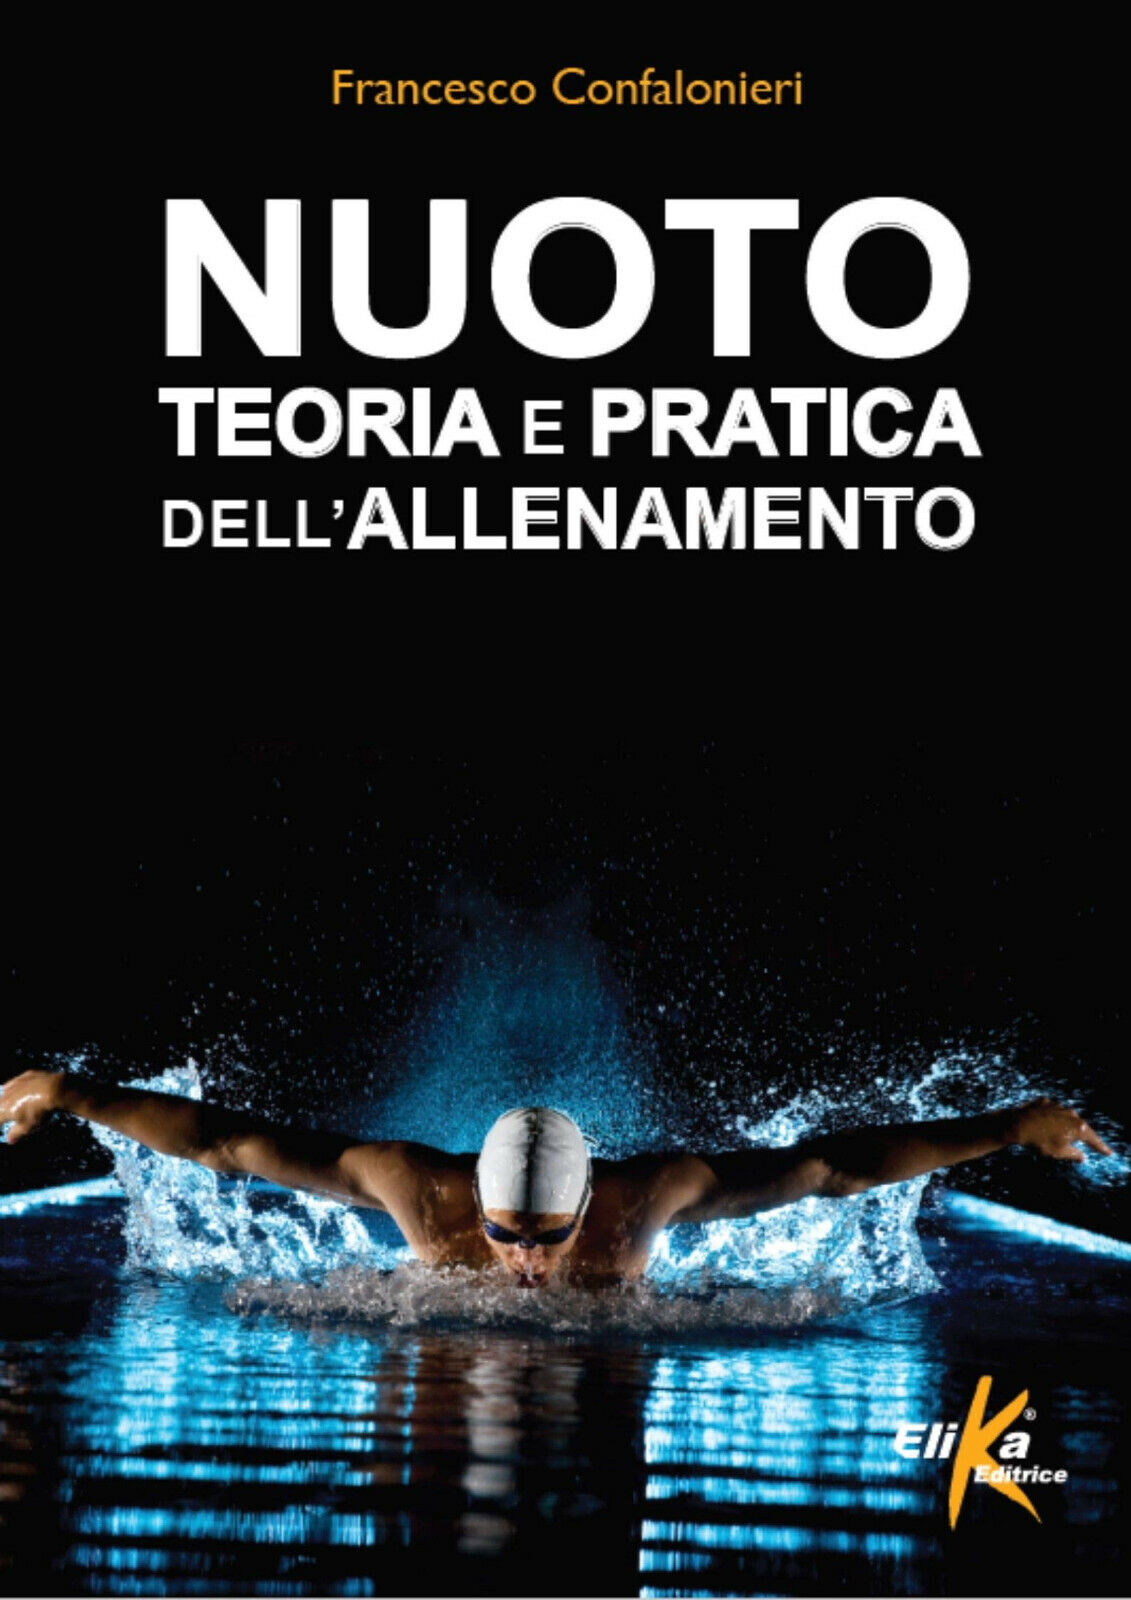 Nuoto. Teoria e pratica dell'allenamento - Francesco Confalonieri - Elika, 2015 libro usato